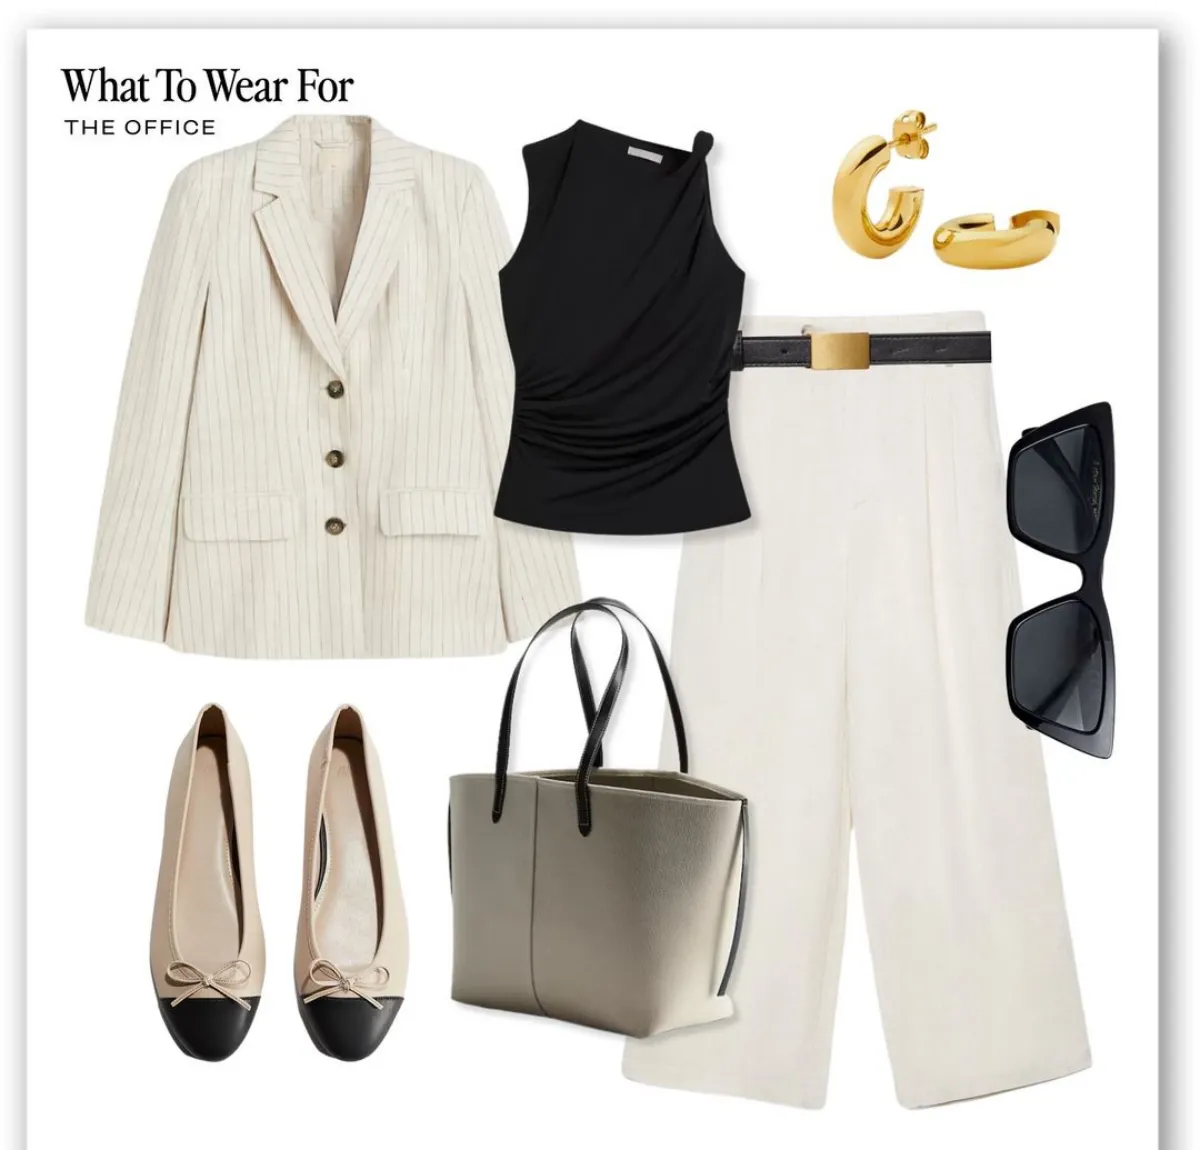 büro outfit weiße leinen hose kombination schwarzes top weißer blazer